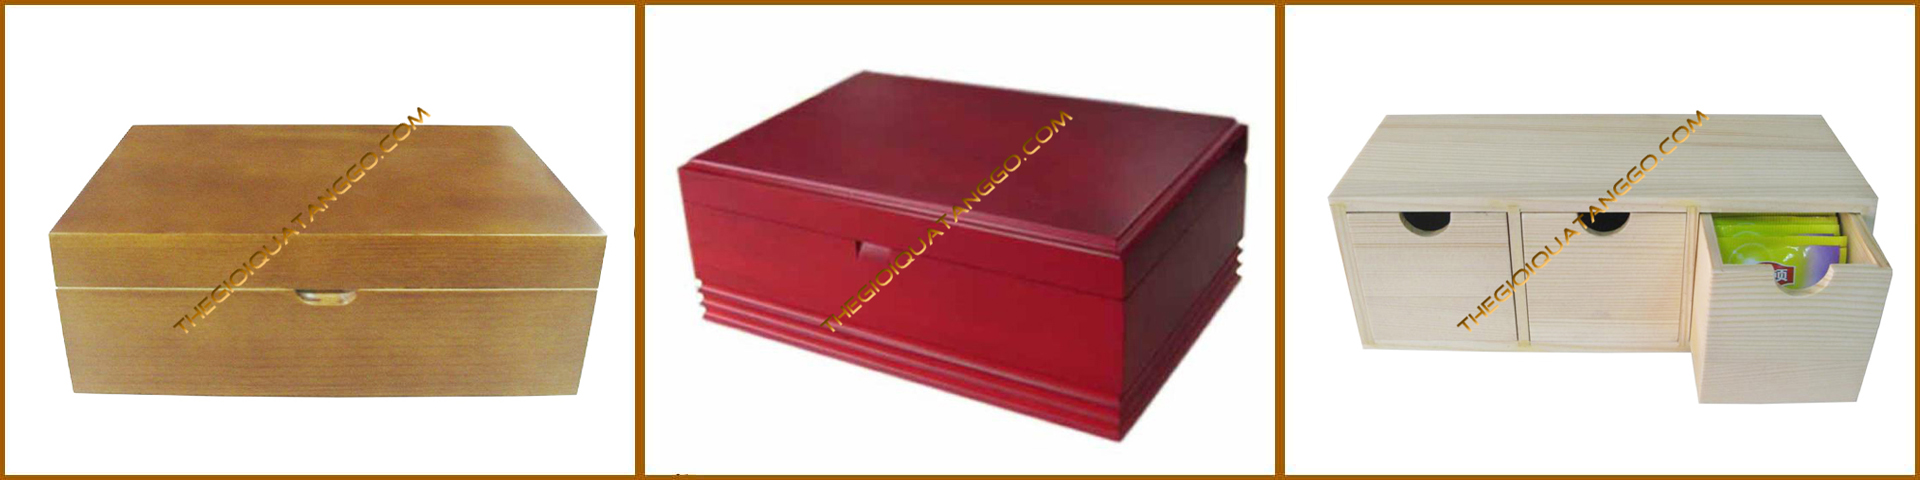 hộp trà gỗ được sơn màu đỏ 1